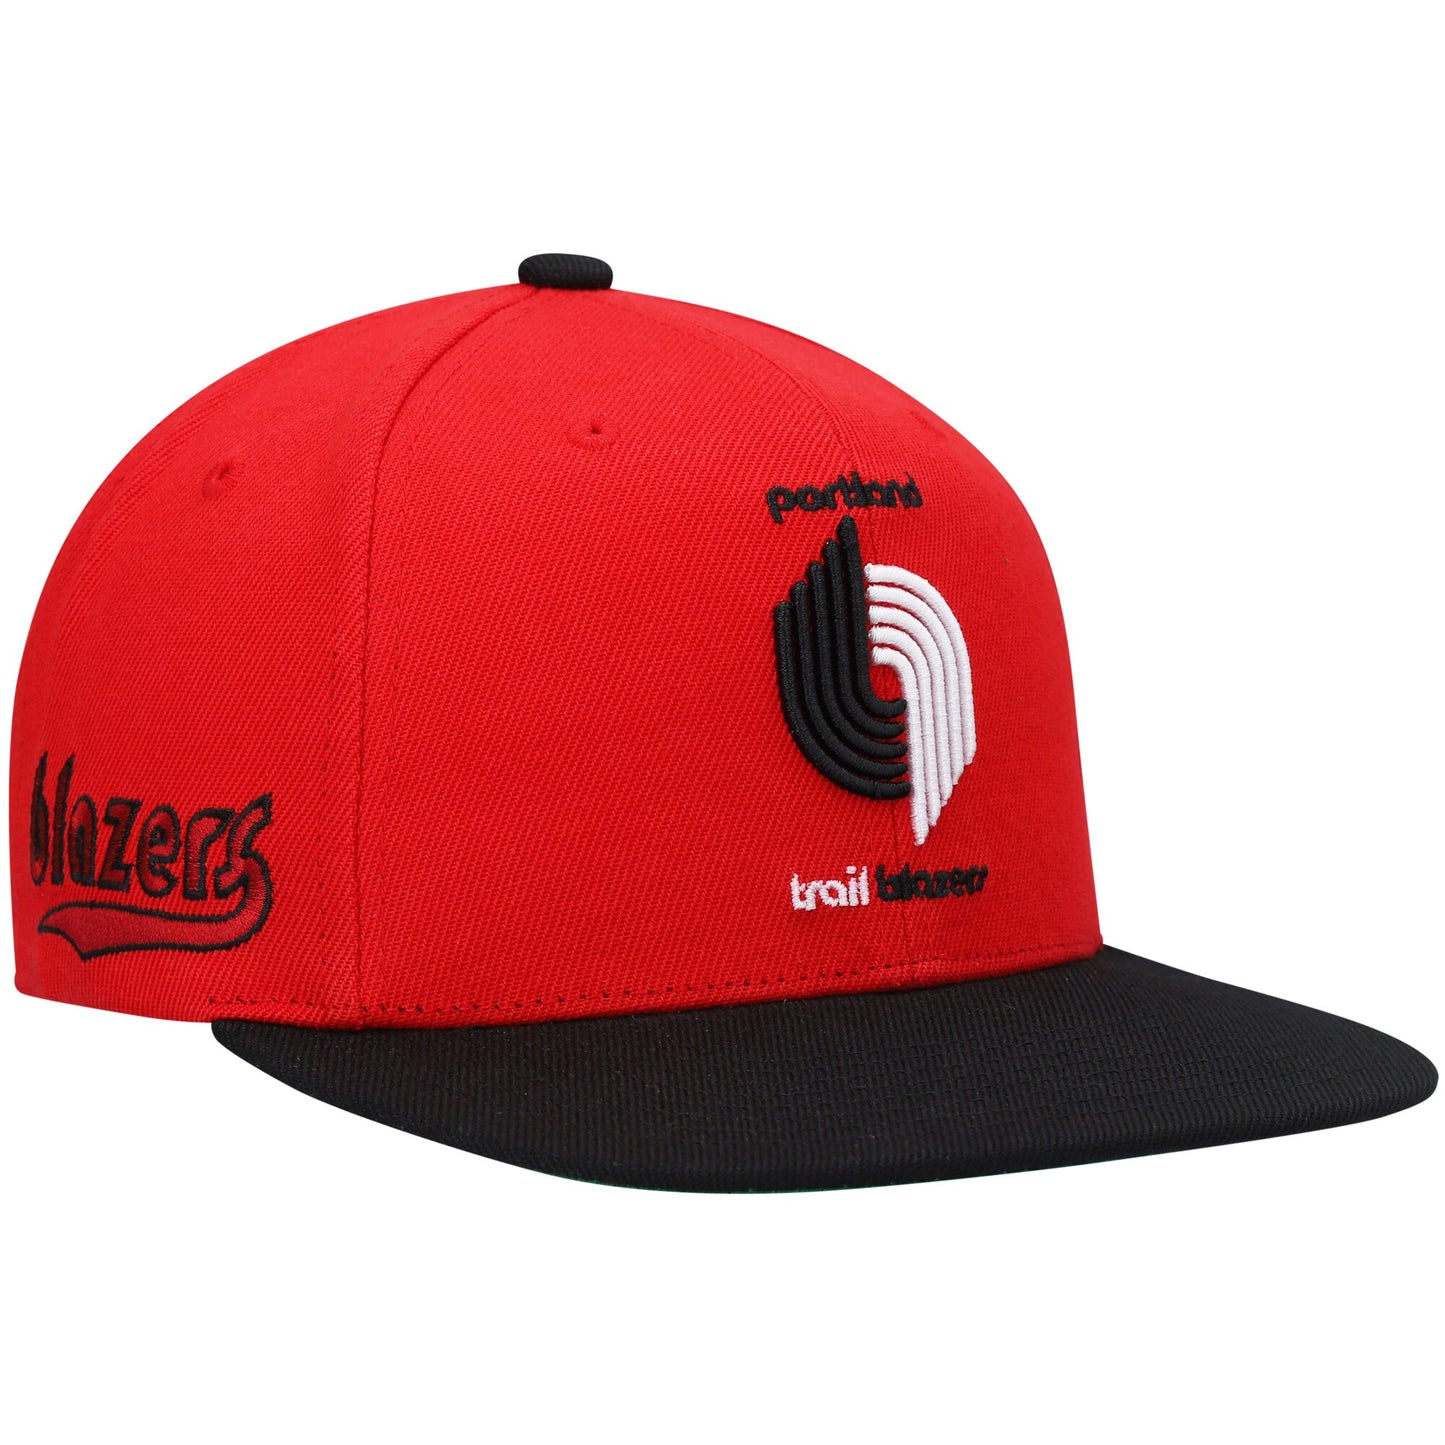 Portland Trail Blazers Mitchell & Ness Hardwood Classics Snapback Hat - Red/Black